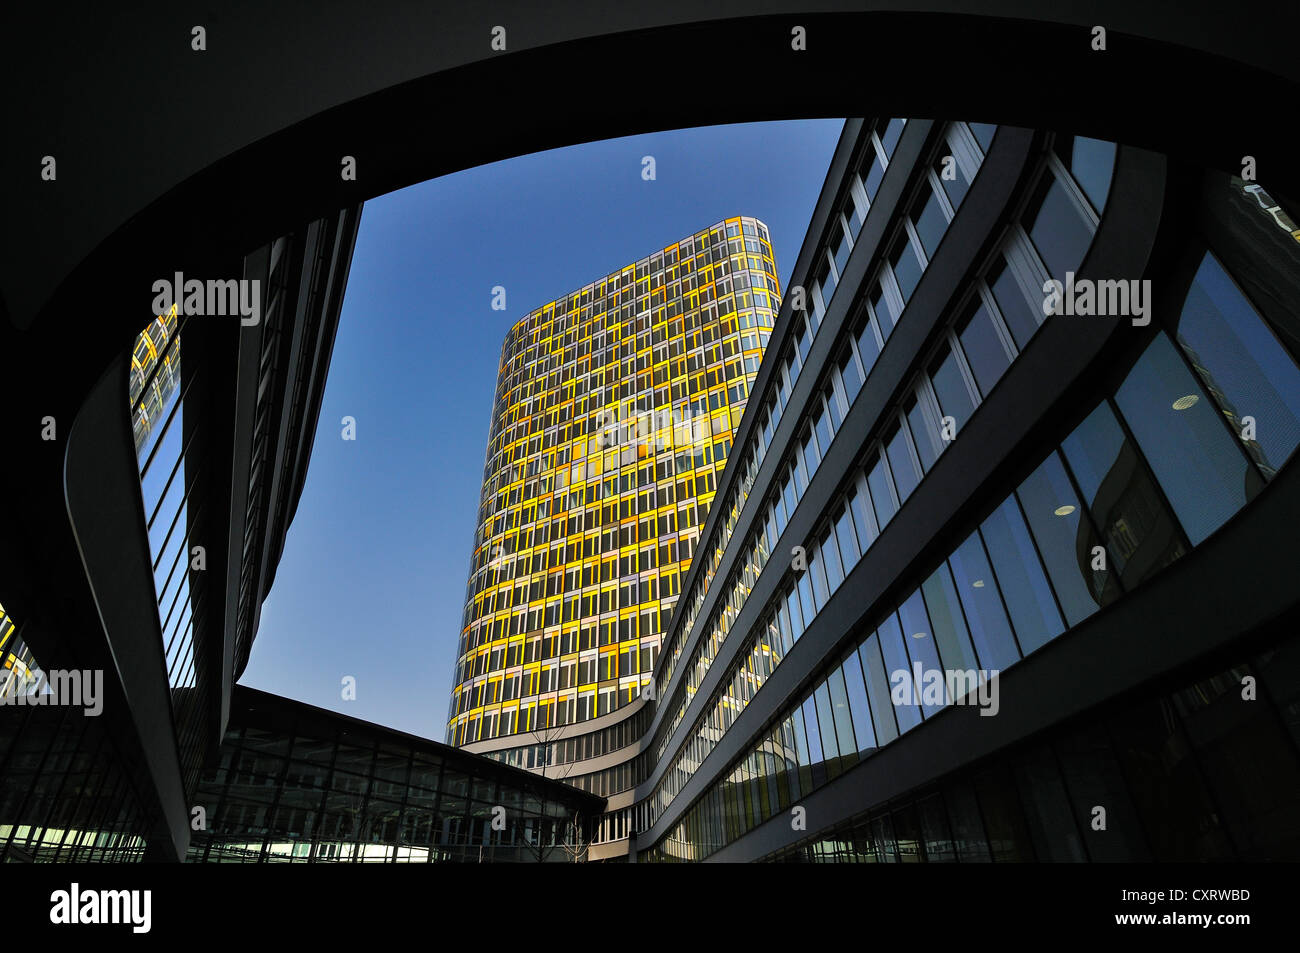 La nueva sede de ADAC, el automóvil club alemán, calle Hansastrasse 23-25, Munich, Baviera, Alemania, Europa Foto de stock